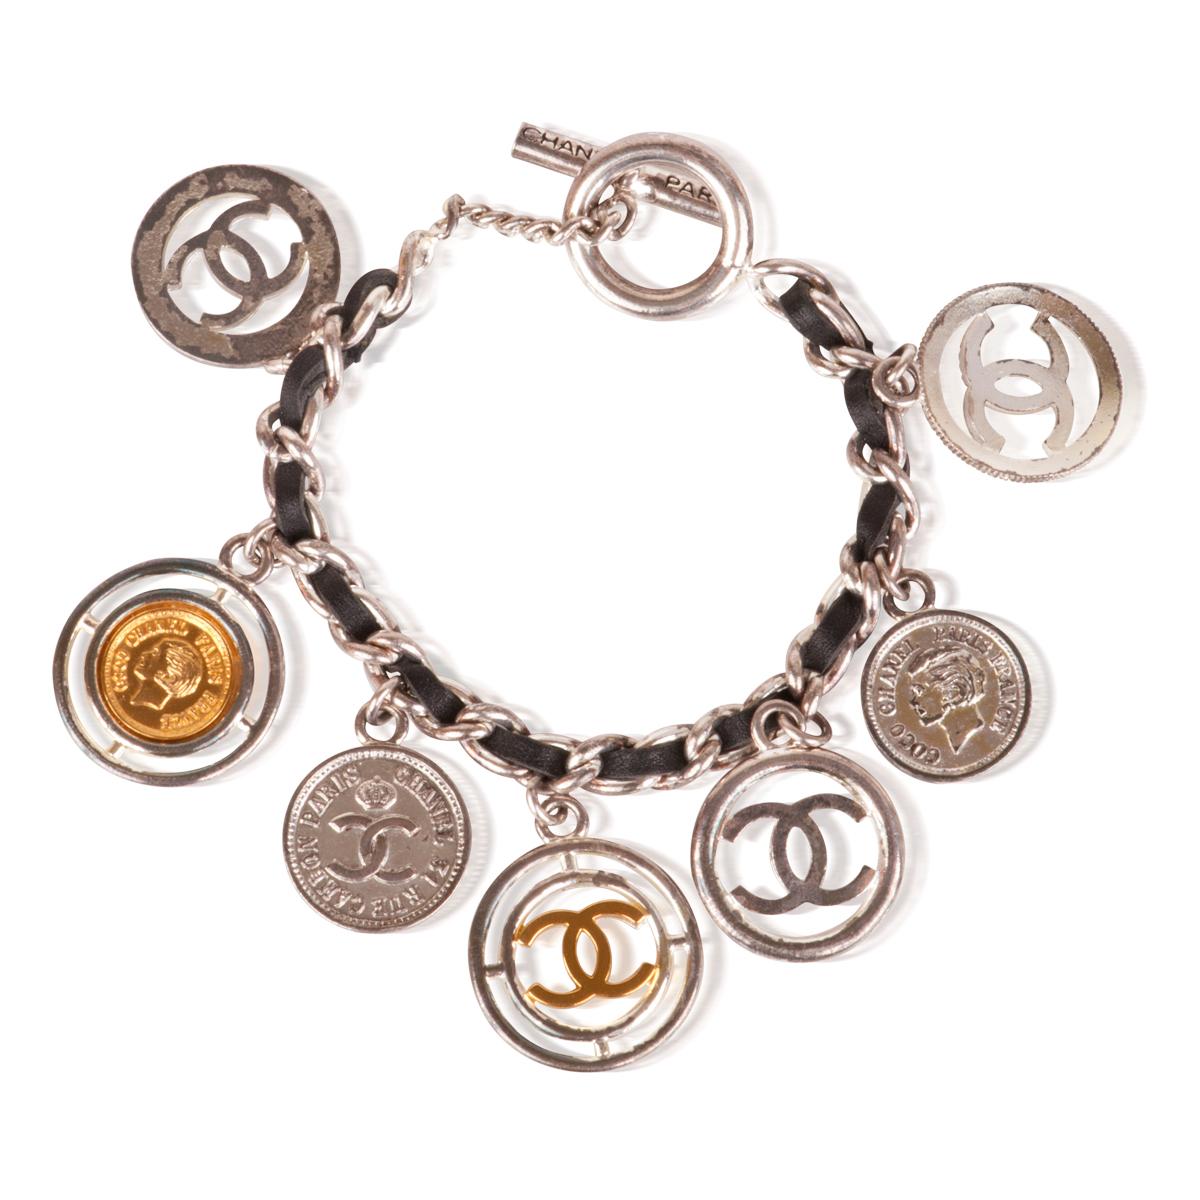 Bracelet Chanel vintage en cuir argenté avec le logo CC, fabriqué en France en 1997. 

Le bracelet est issu de la collection Chanel Printemps 1997. Il est très classique, en bon état d'occasion, et parfait pour être porté tous les jours. Le bracelet